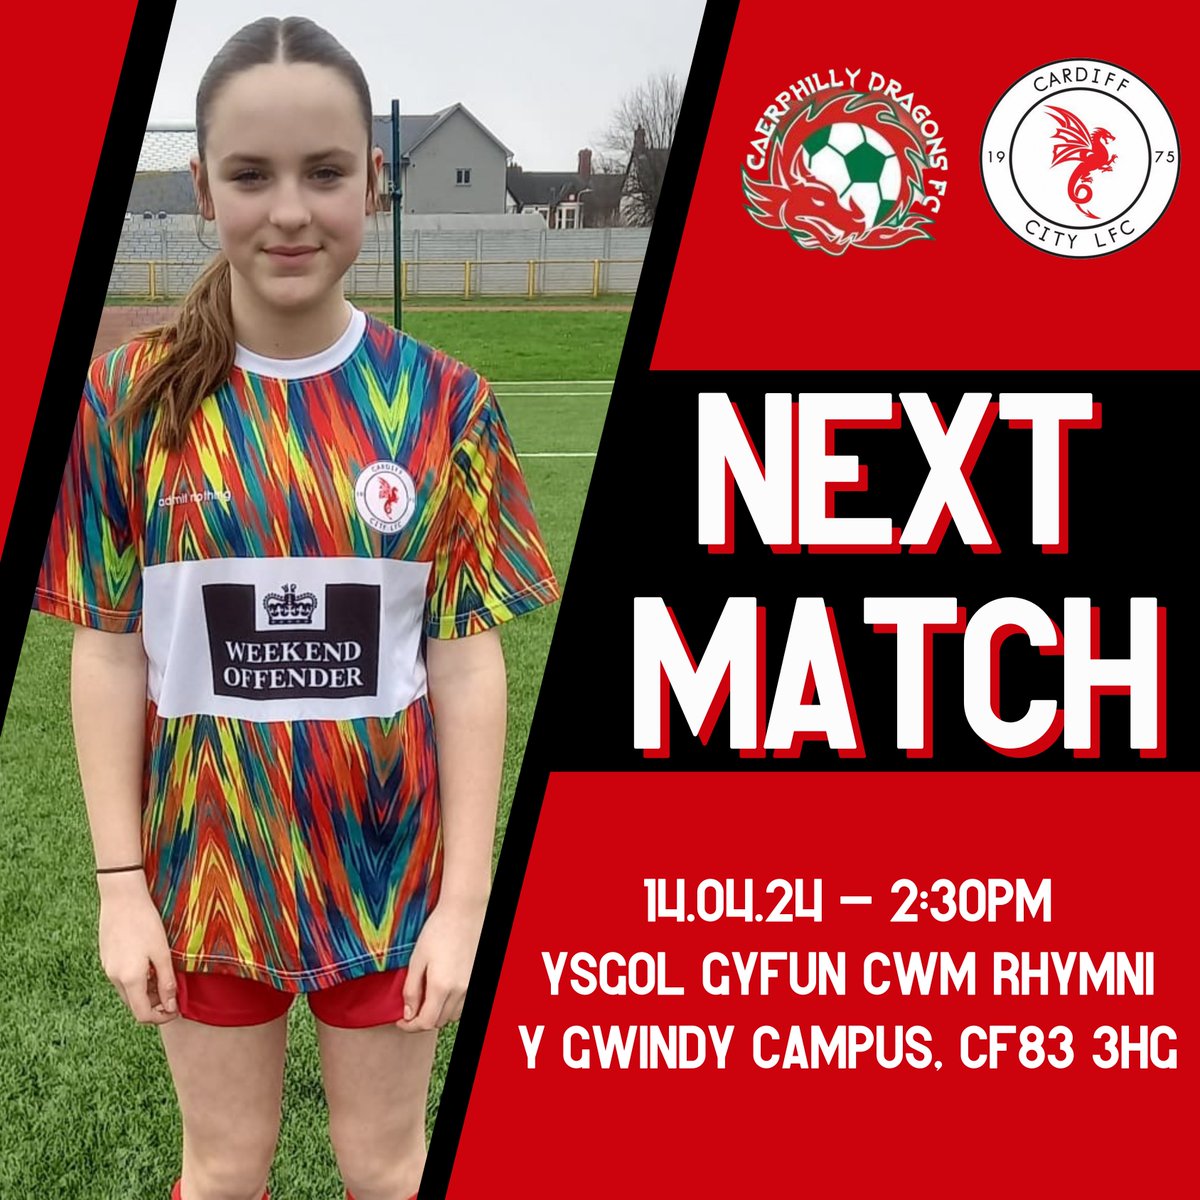 We’re back in action tomorrow in the SWWGL League 👊

🆚 Caerphilly Dragons FC U14s
📆 Sunday 14th April
⏰ 2:30pm
🏟️ Ysgol Gyfun Cwm Rhymni Y Gwindy Campus, CF83 3HG
🏆 @swwgl